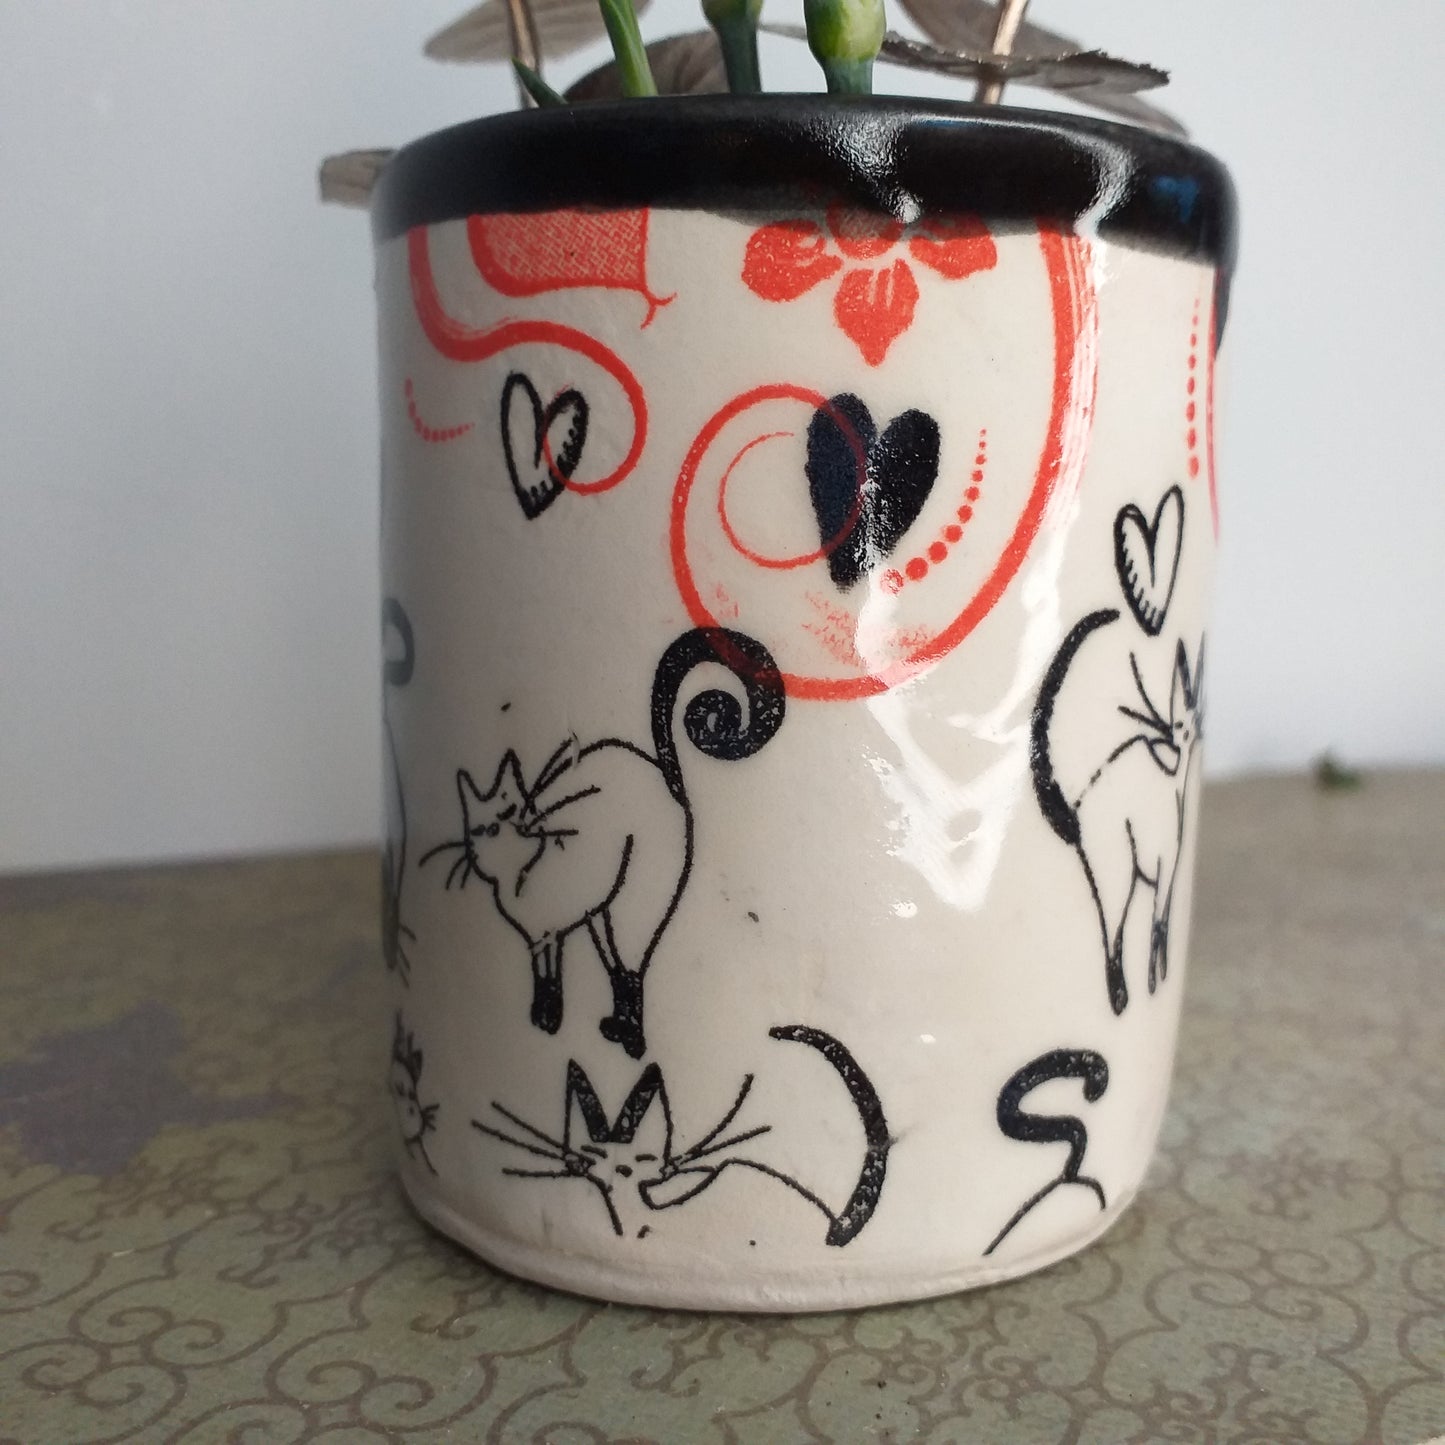 Little flower vase